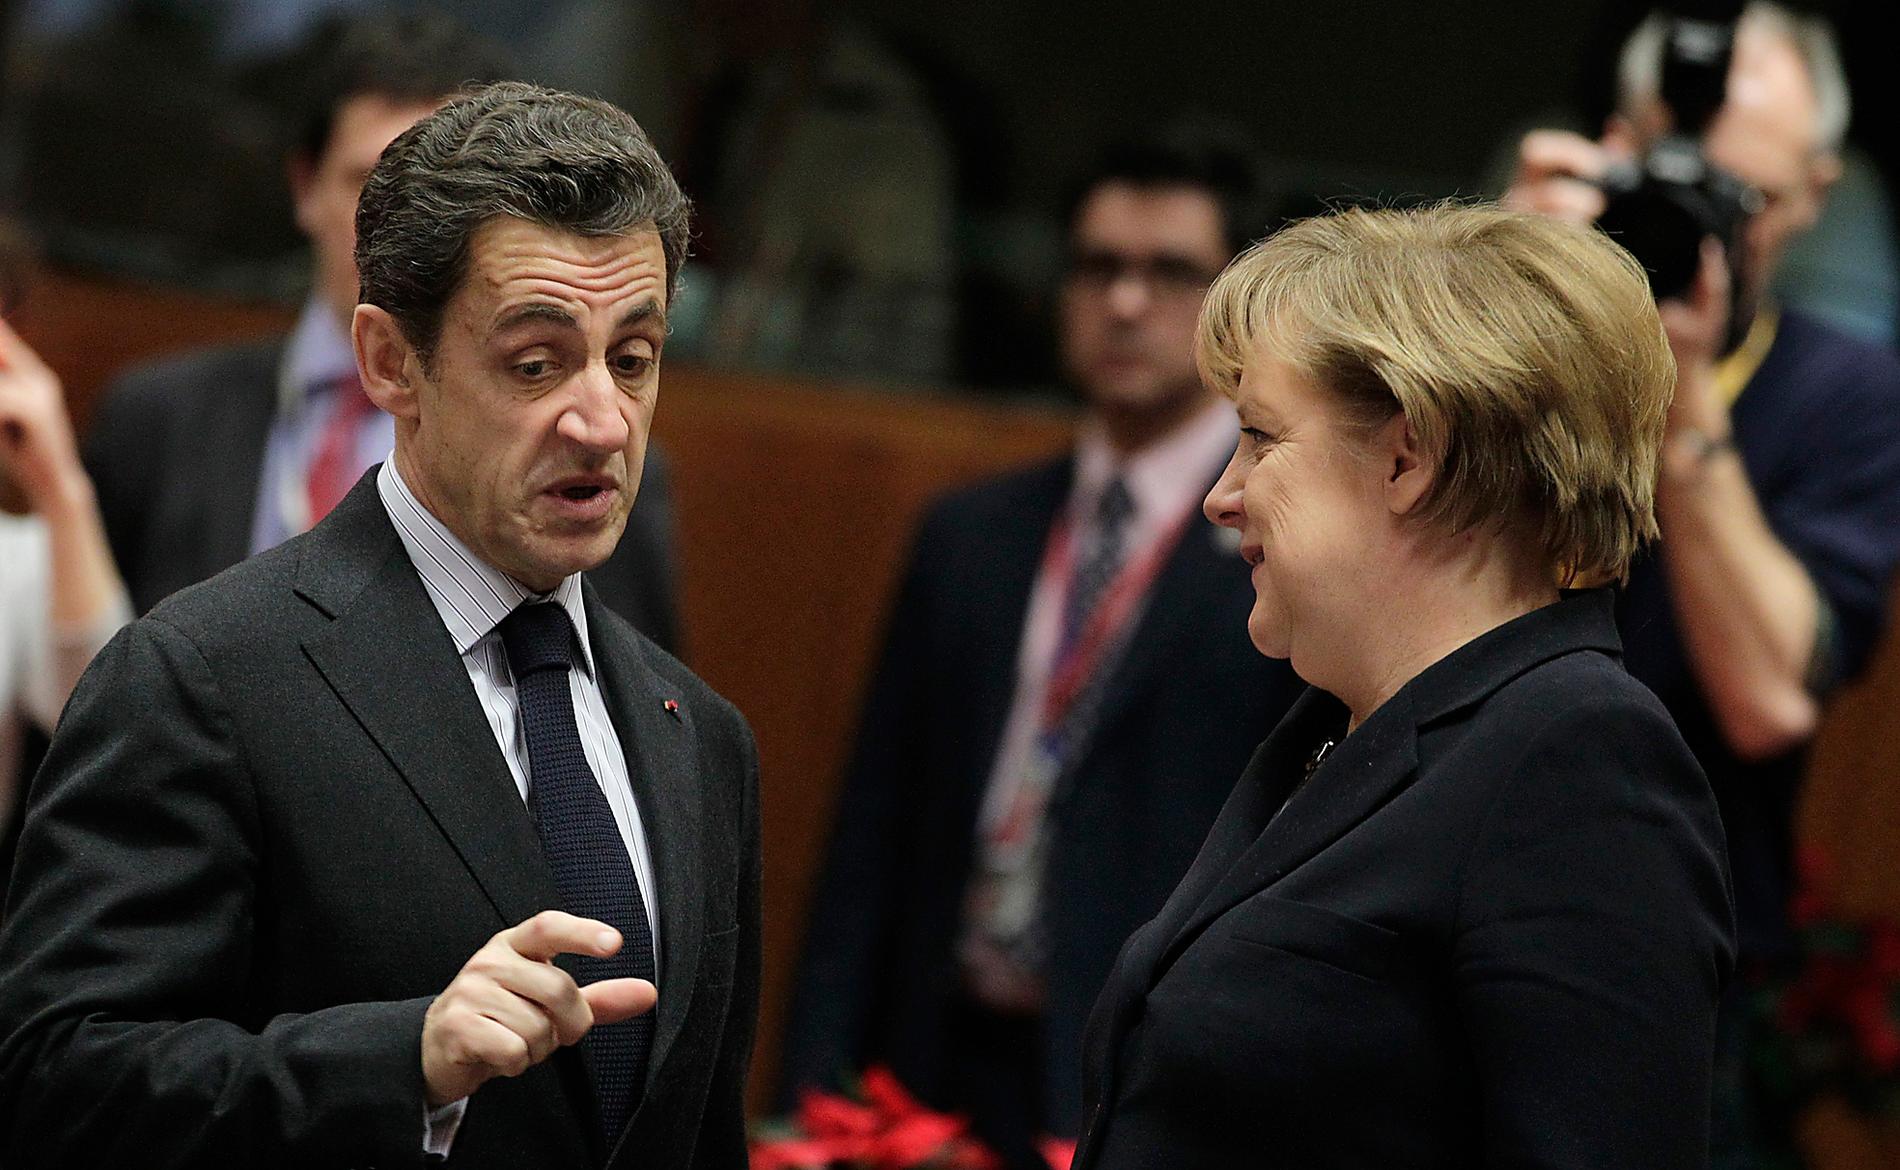 Nicolas Sarkozy, 34 % (i augusti) Tre opinionsmätningar visade att förtroendet var lågt för den franske presidenten efter hans hårda utspel under sommaren mot romer. Två av instituten visade att presidenten fick 34 procent. Ett av dem att han fick 36 procent. Enligt de tre instituten, ­Ipsos, Viacoice och Ifop, var siffrorna de lägsta sedan Sarkozy blev president 2007. ANGELA MERKEL, 30 % (i juli) SI juli hade förtroendesiffrorna för Tysklands förbundskansler Angela Merkel nått nya bottennivåer. Då hade hennes mitten-högerregering bara 30 procent i en mätning från mätinstitutet Forsa, det sämsta resultatet på 24 år. Hade det varit val vid den ­tiden hade regeringen förlorat makten, visade mätningen.